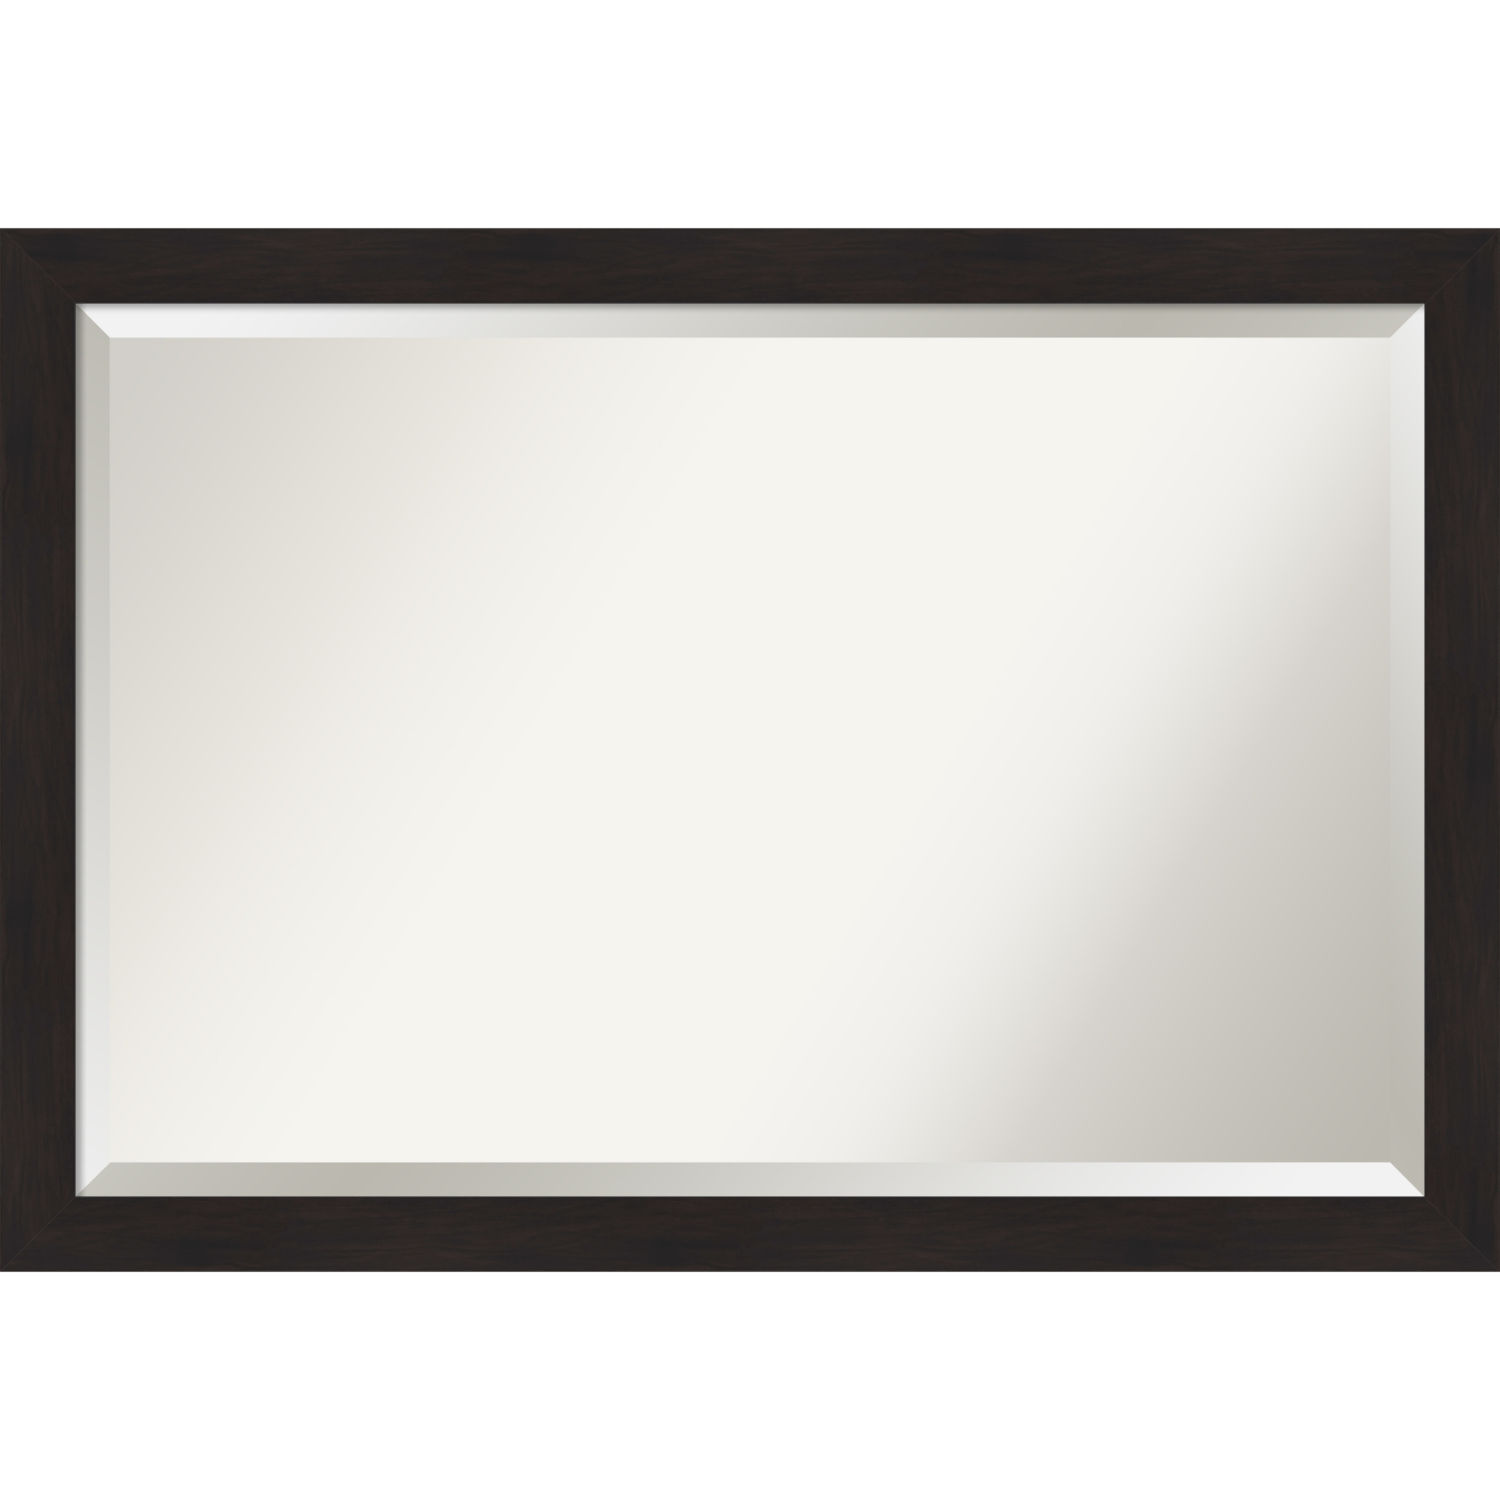 Espresso 40W X 28H-Inch Bathroom Vanity Wall Mirror